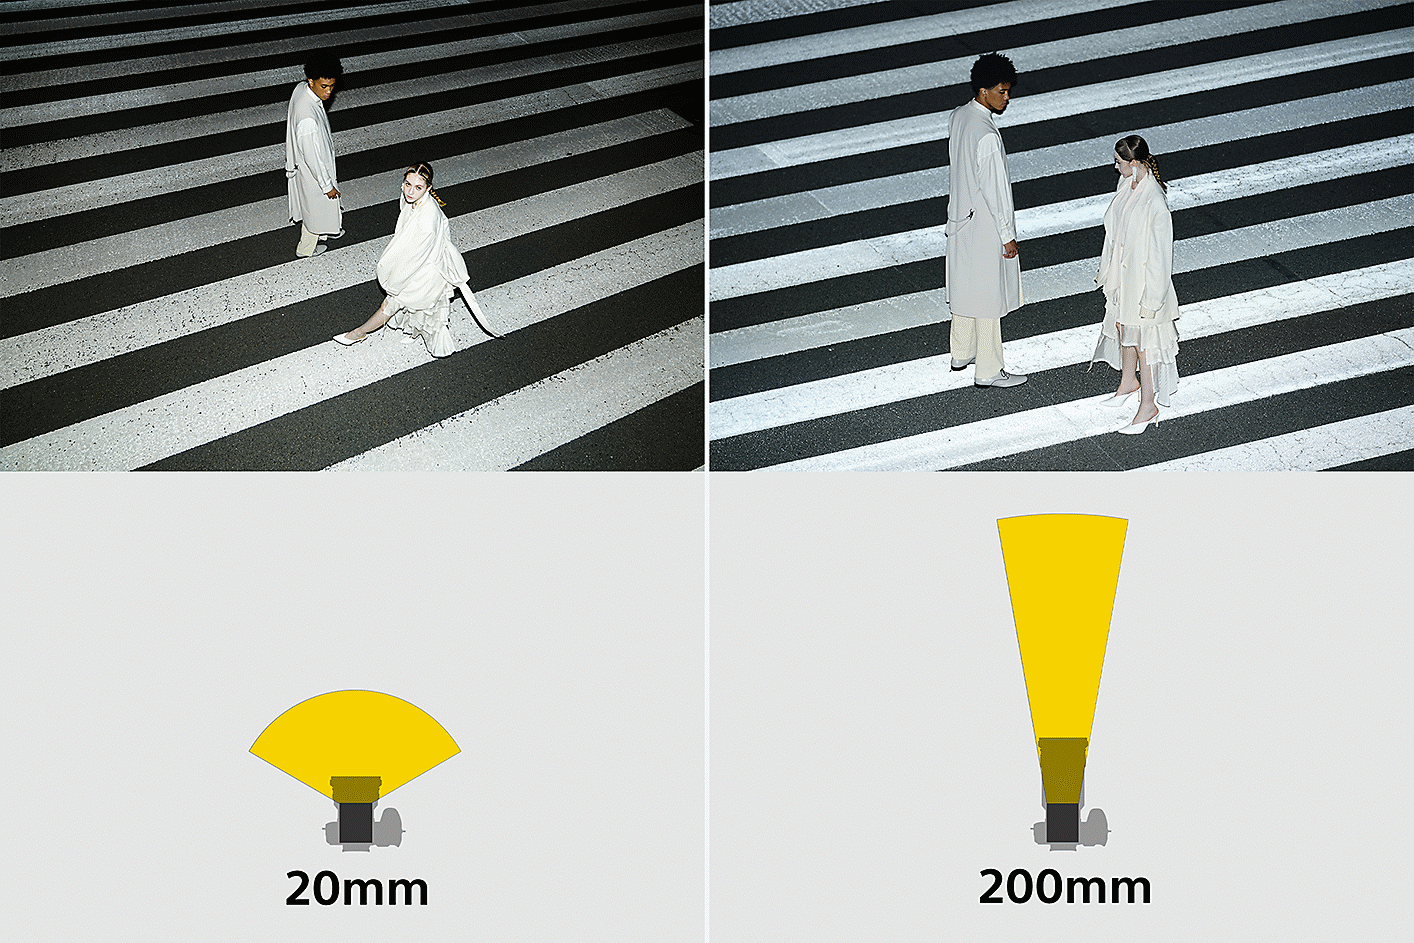 Imagen en la que se ilustra cómo el ángulo de iluminación del flash se adapta automáticamente a la distancia focal